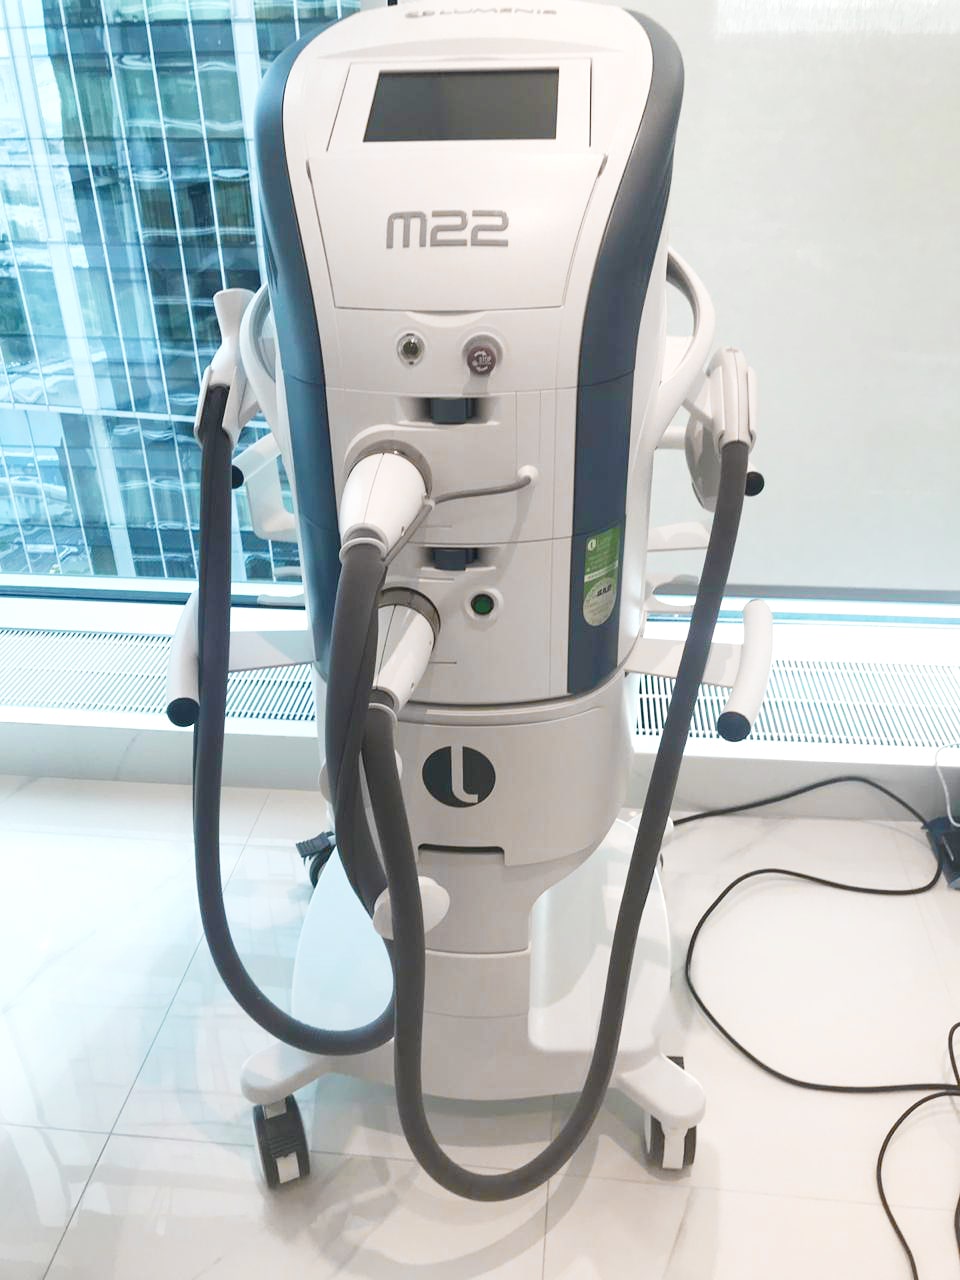 Аппарат лазерный терапевтический M22 Lumenis 2